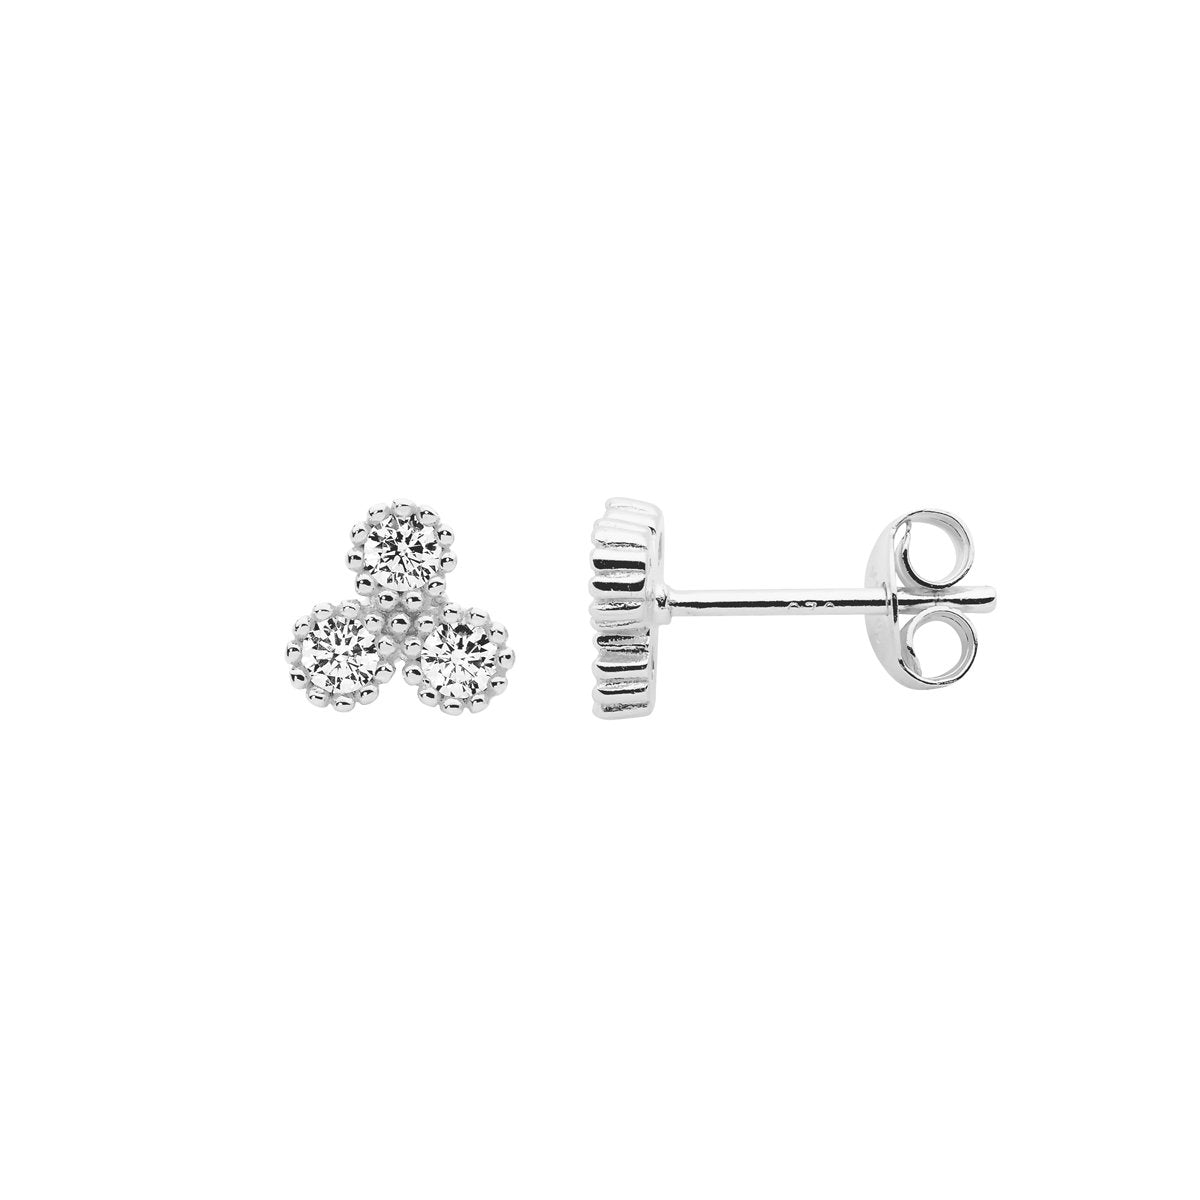 Sterling silver cubic zirconia stud earrings